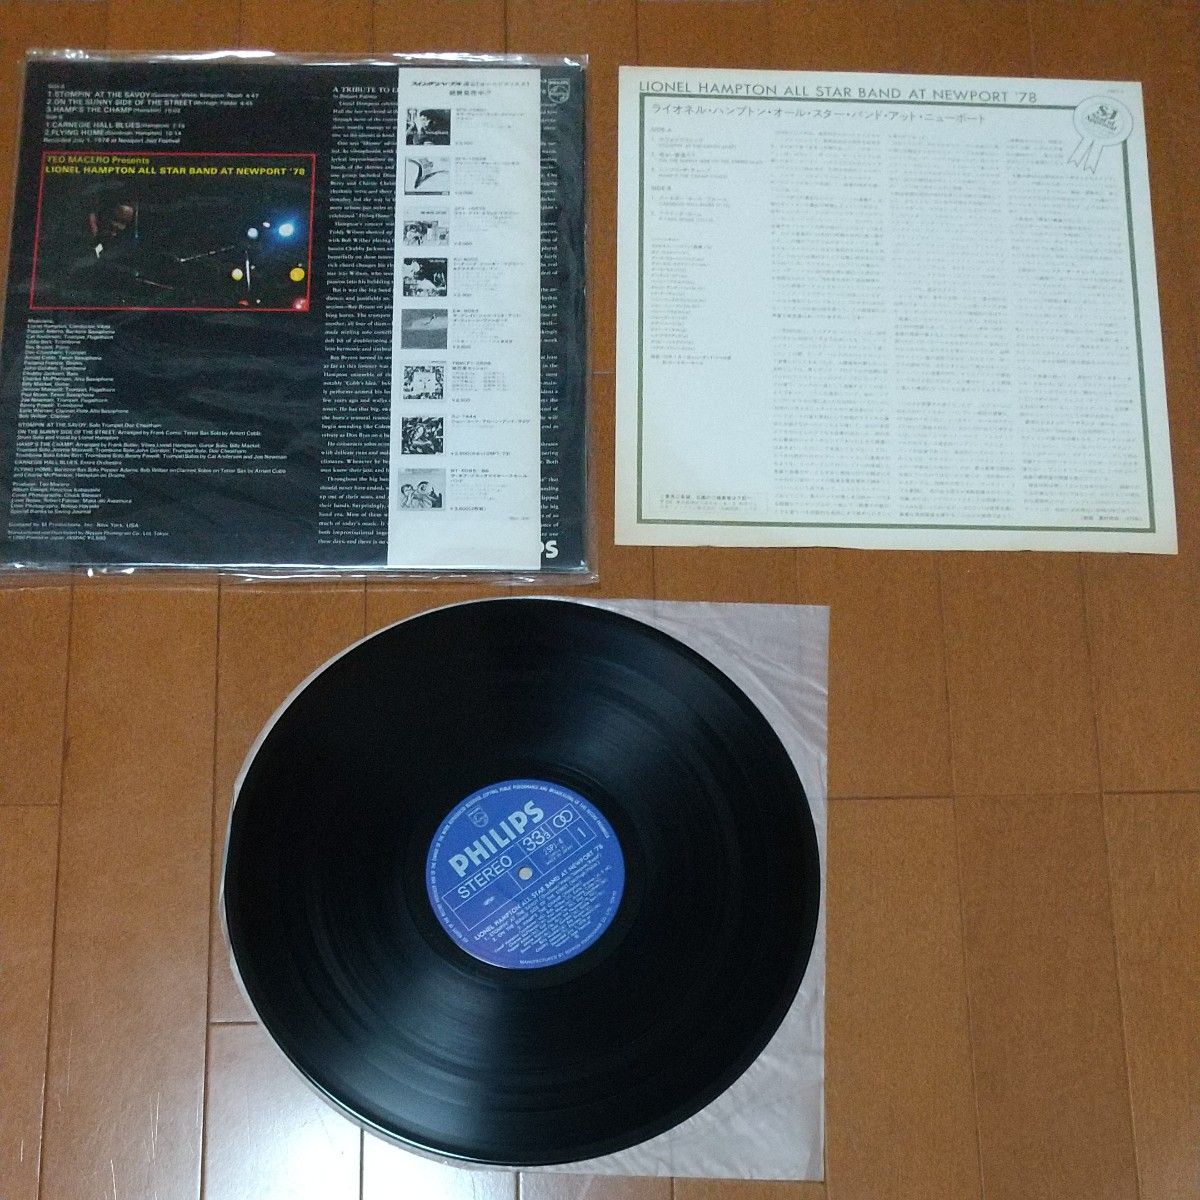 JAZZ 日本盤帯付ライオネル・ハンプトン LPレコード4枚セットまとめ売り